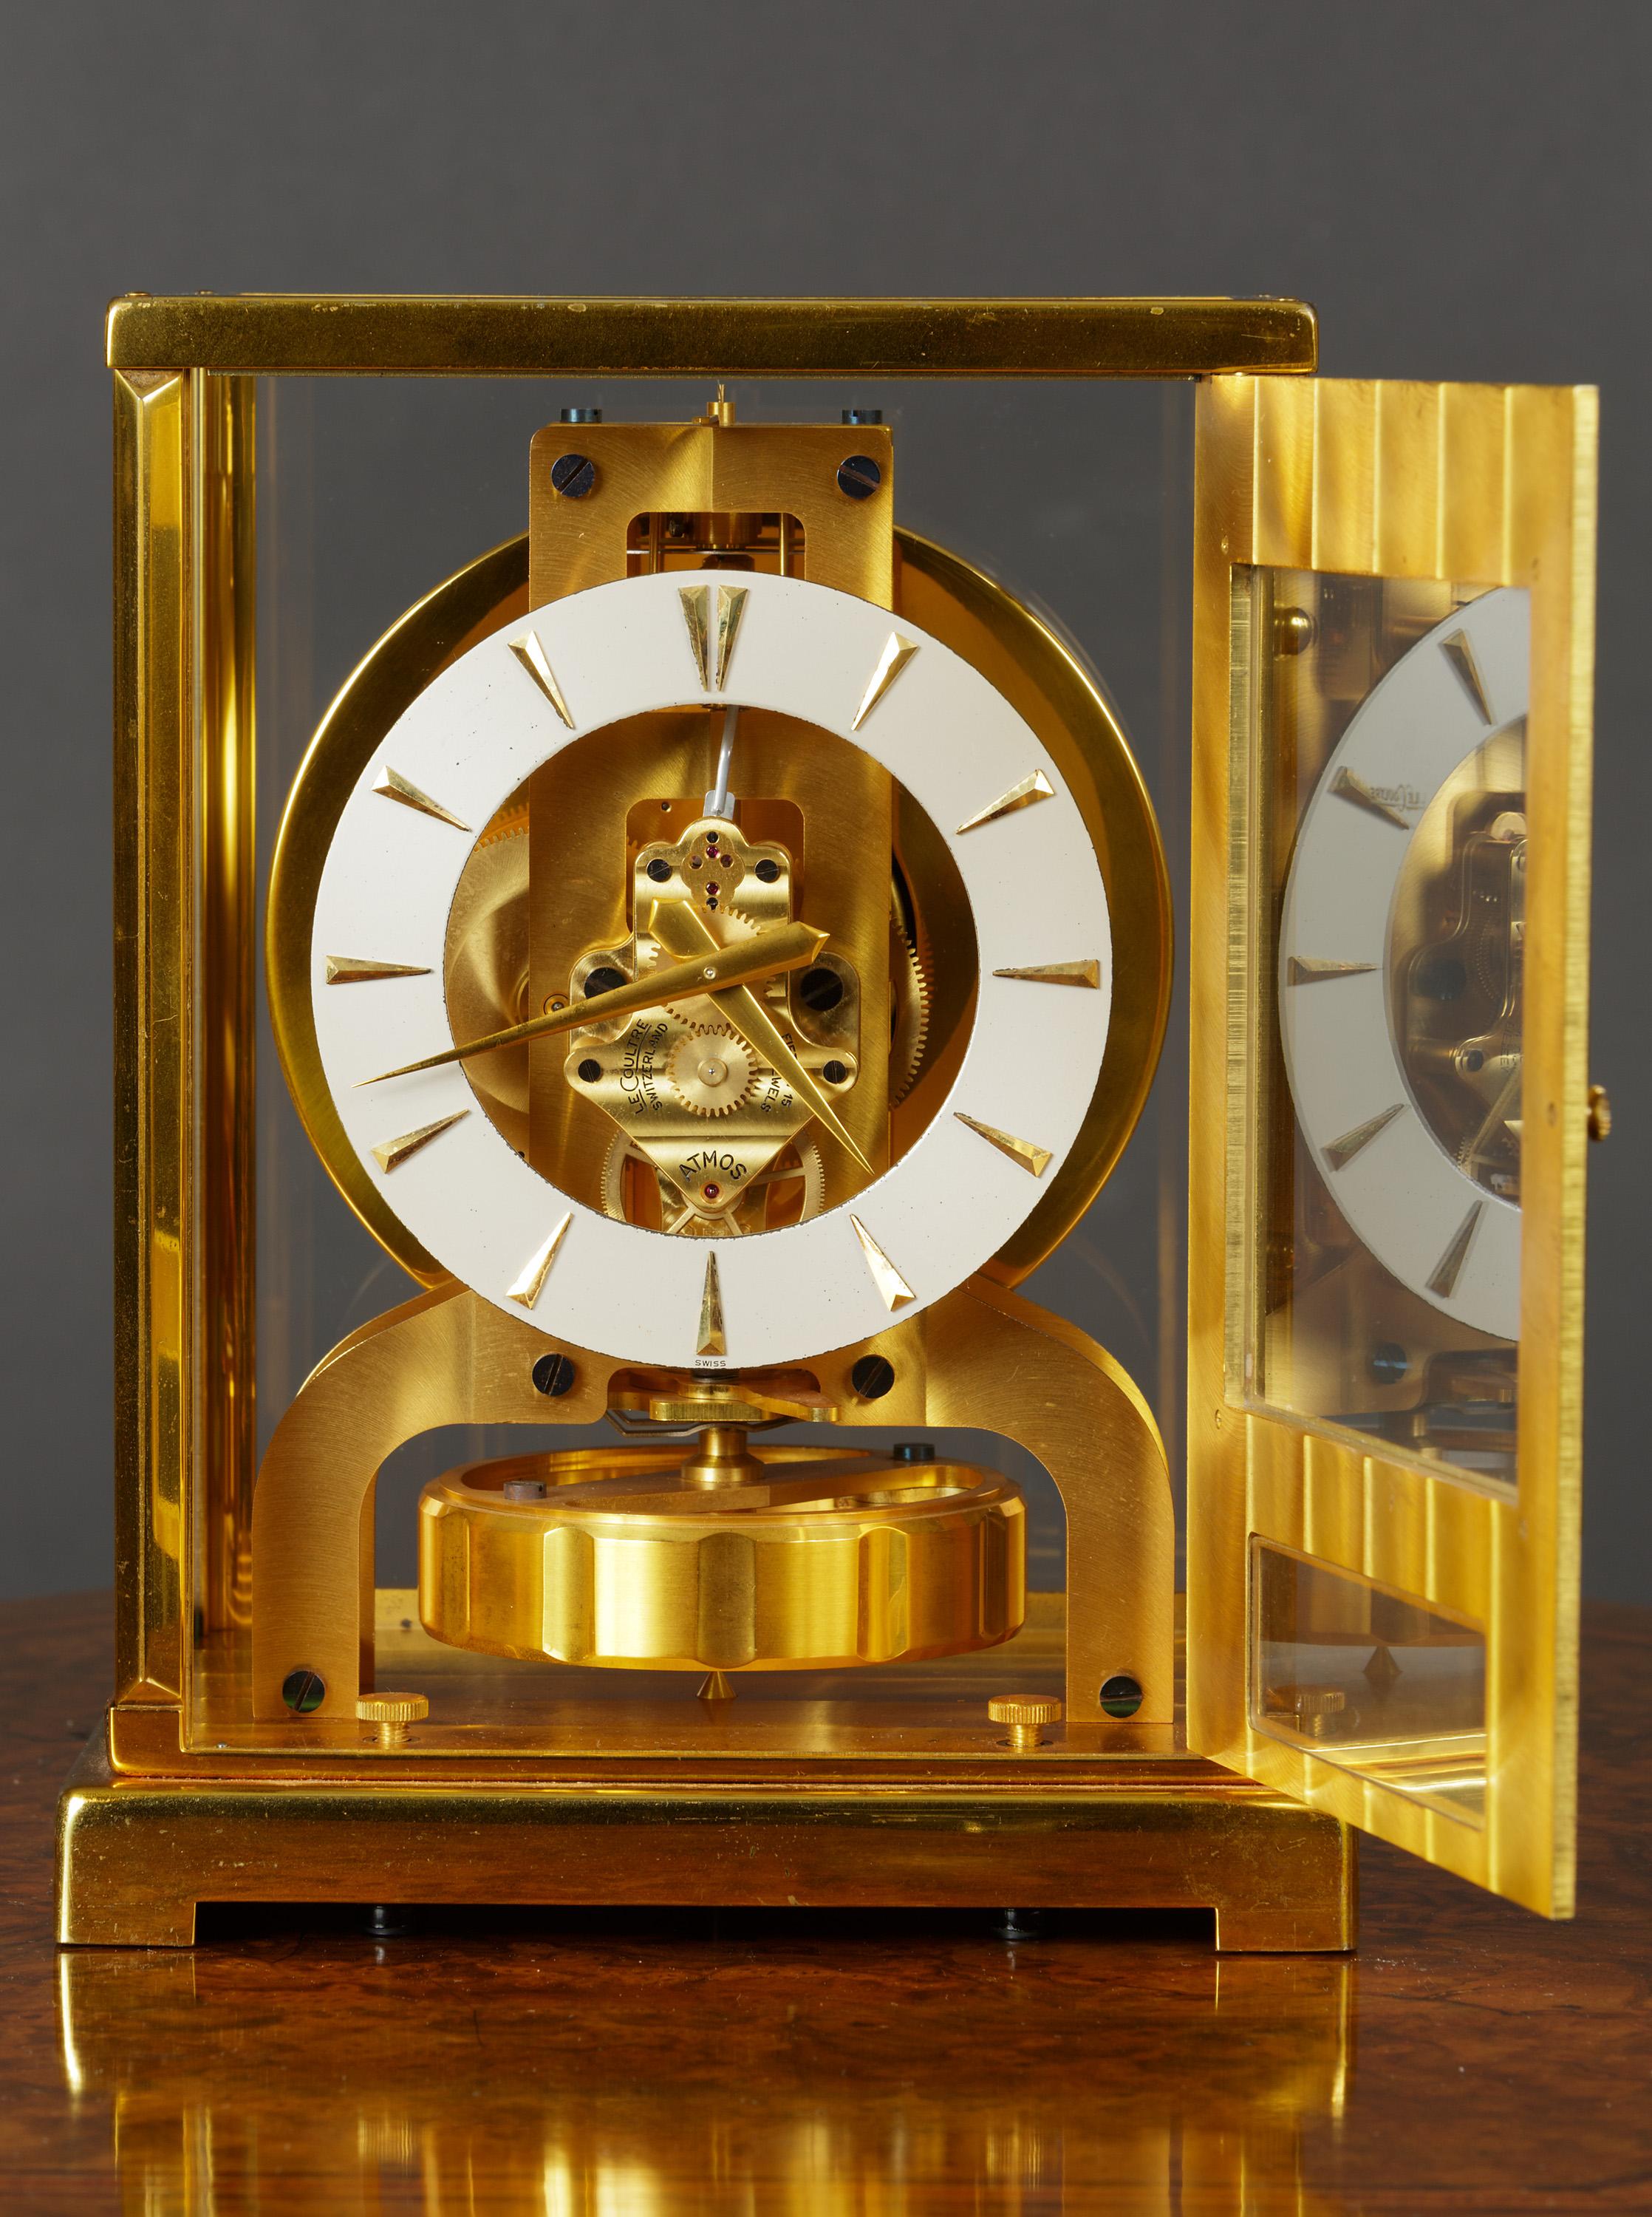 JAEGER LE COULTRE

Tuxedo Atmos Uhr mit Rubinsteinwerk signiert 'Jaeger Le Coultre'.

Versilbertes Zifferblatt mit Stabindexen und vergoldeten Originalzeigern. Oszillierendes Scheibenpendel mit Vertiefung. Verglaste Eingangstür zum